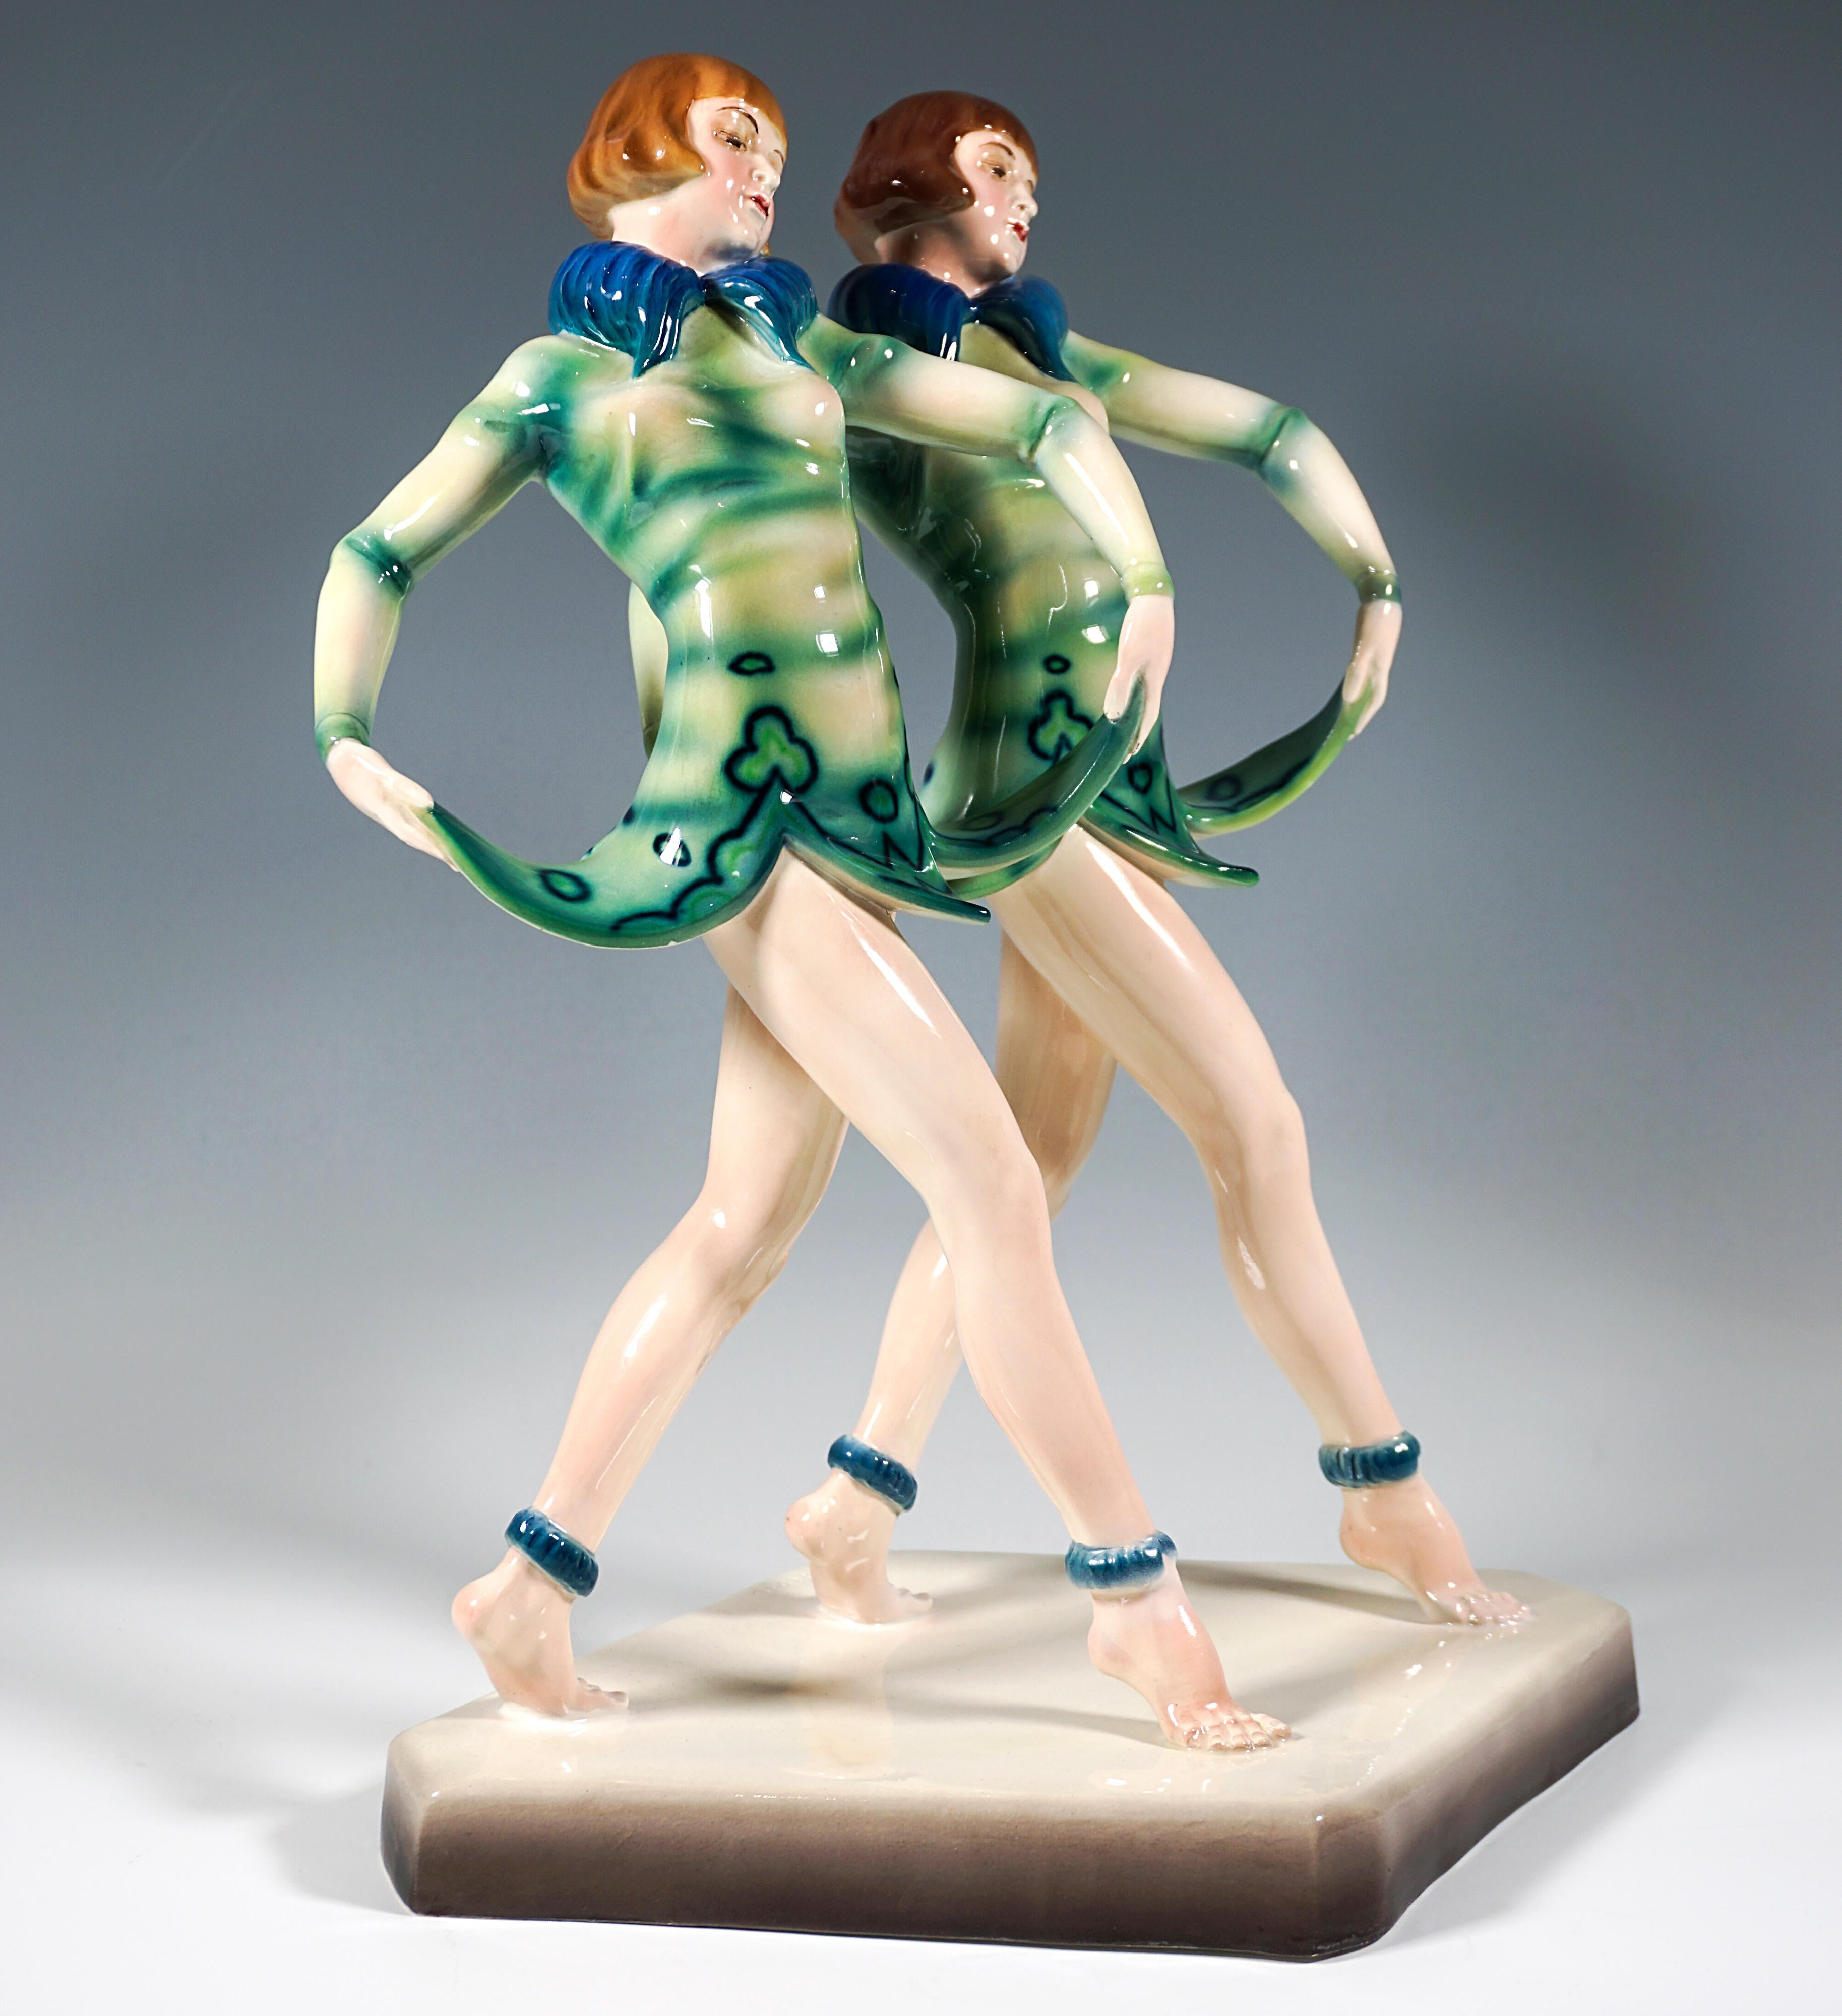 Remarquable et rare groupe de figurines Goldscheider Art déco de la fin des années 1920 :
Deux jeunes danseuses de revue jumelles posant avec des coiffures de pageboy, exécutant un pas en avant en parallèle, tout en relevant des deux mains l'ourlet